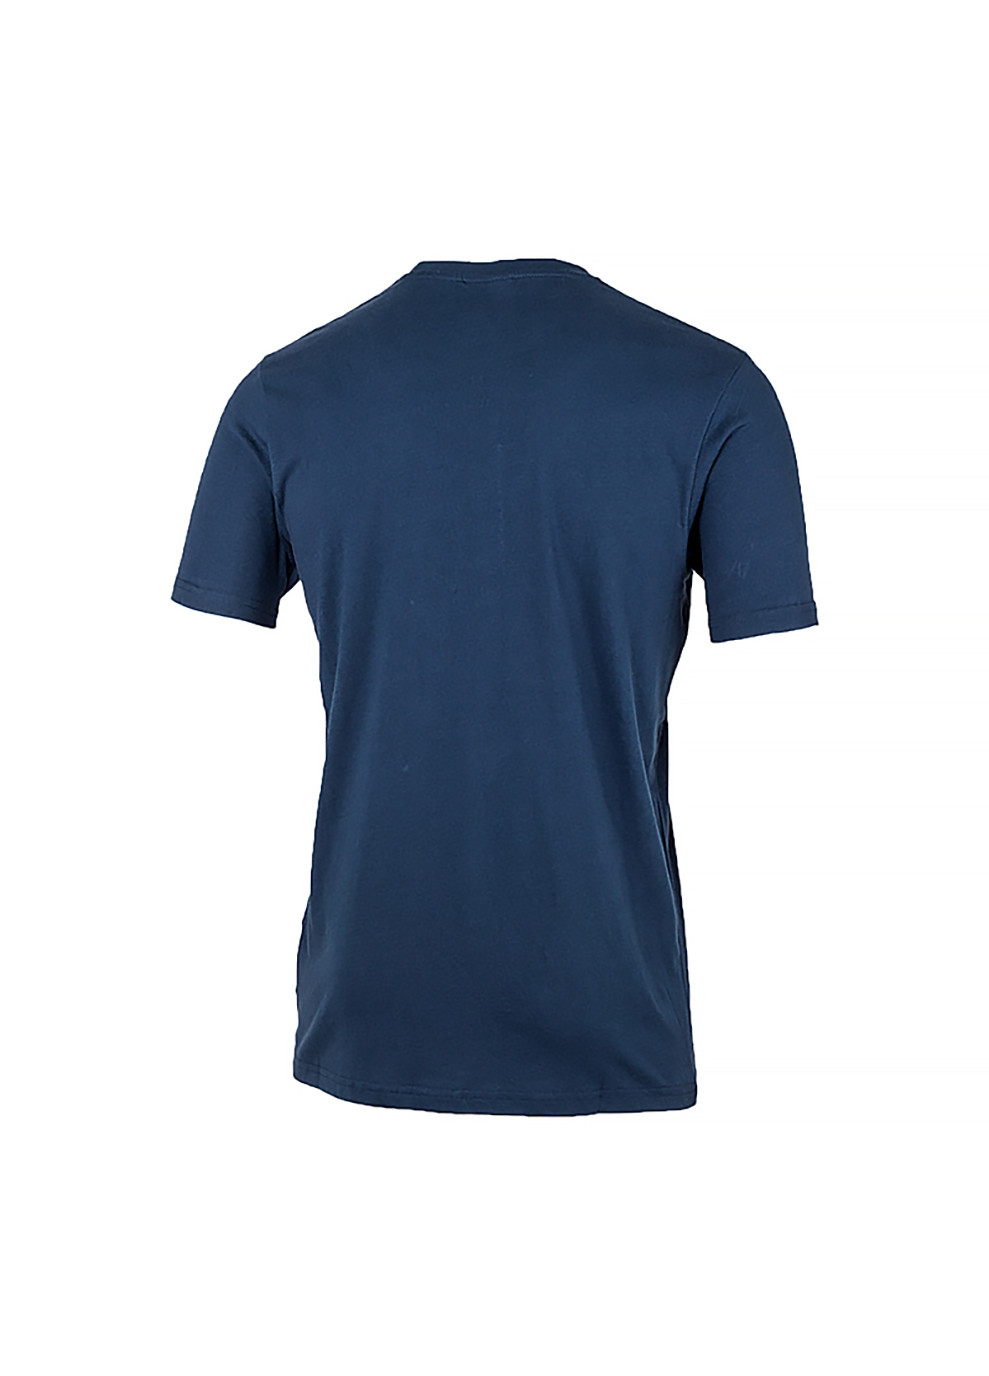 Синя чоловіча футболка sl prado синій 2xl (shc07405-navy 2xl) Ellesse